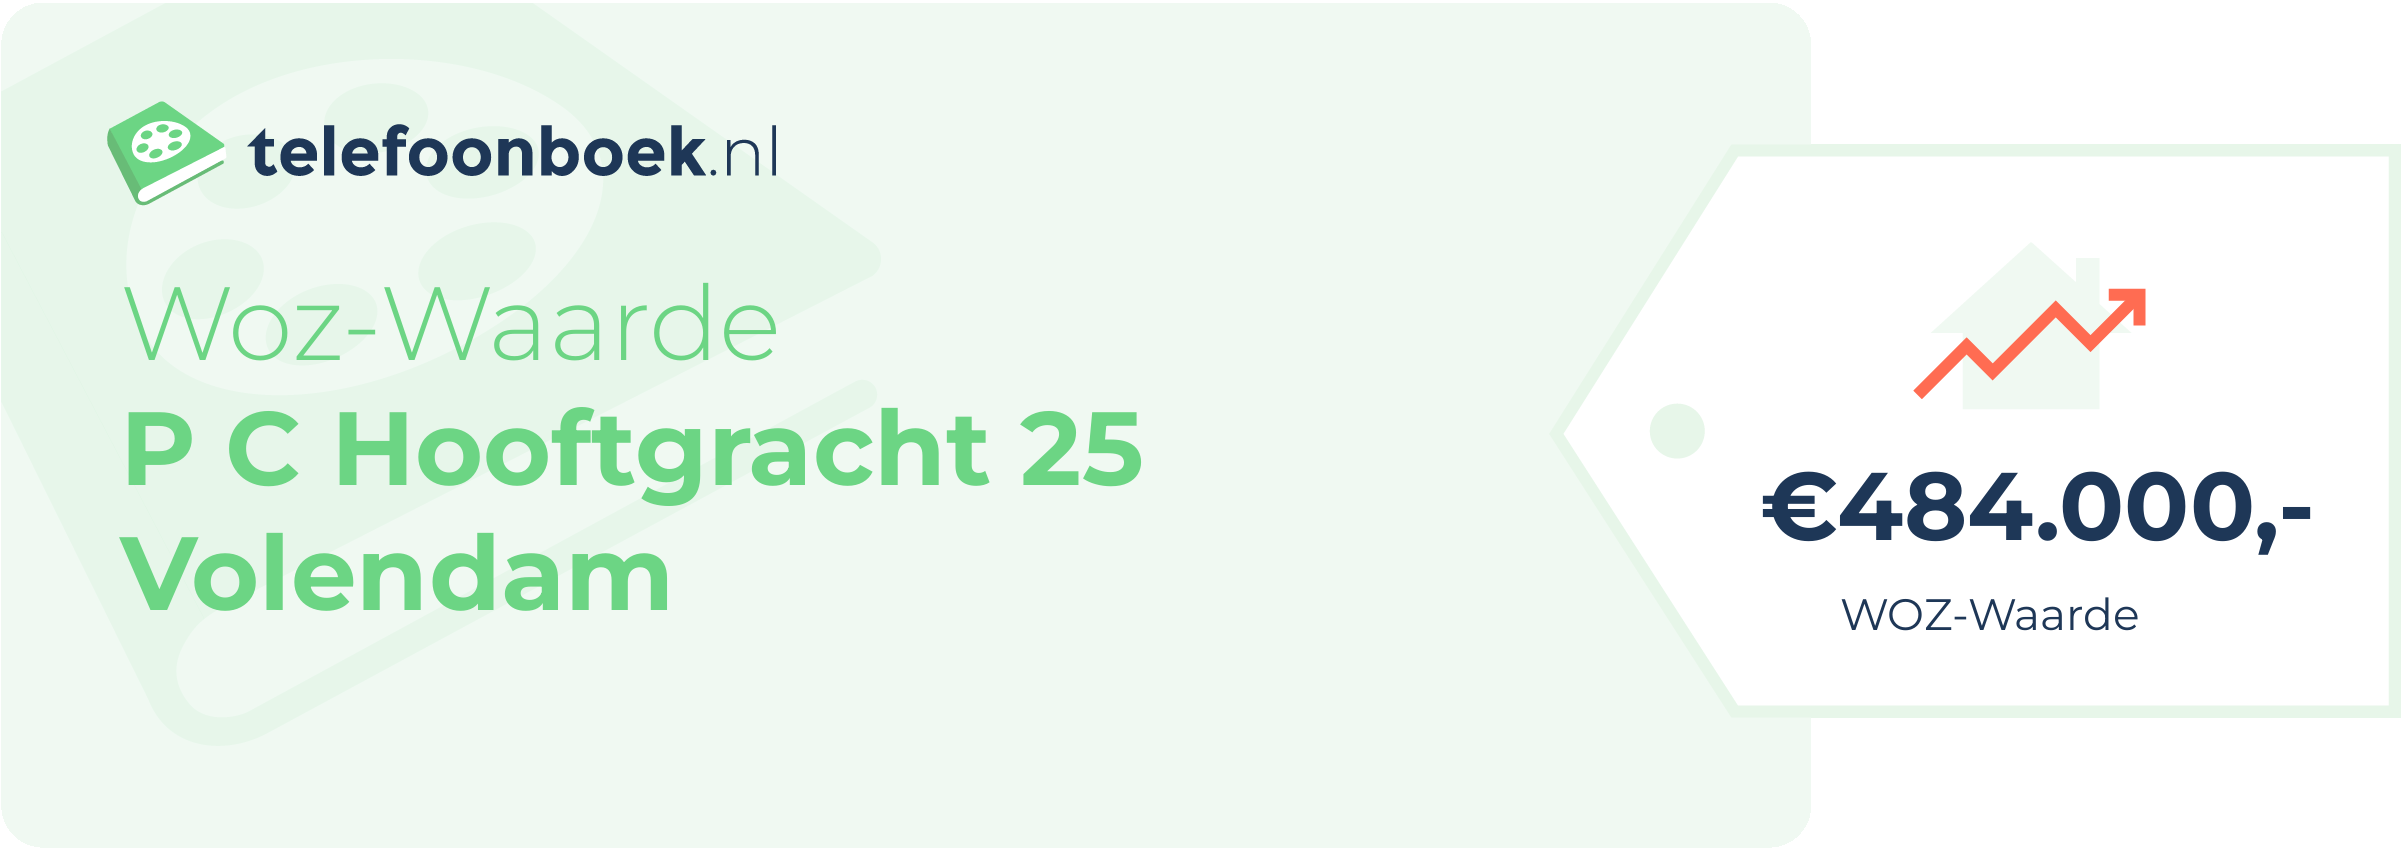 WOZ-waarde P C Hooftgracht 25 Volendam